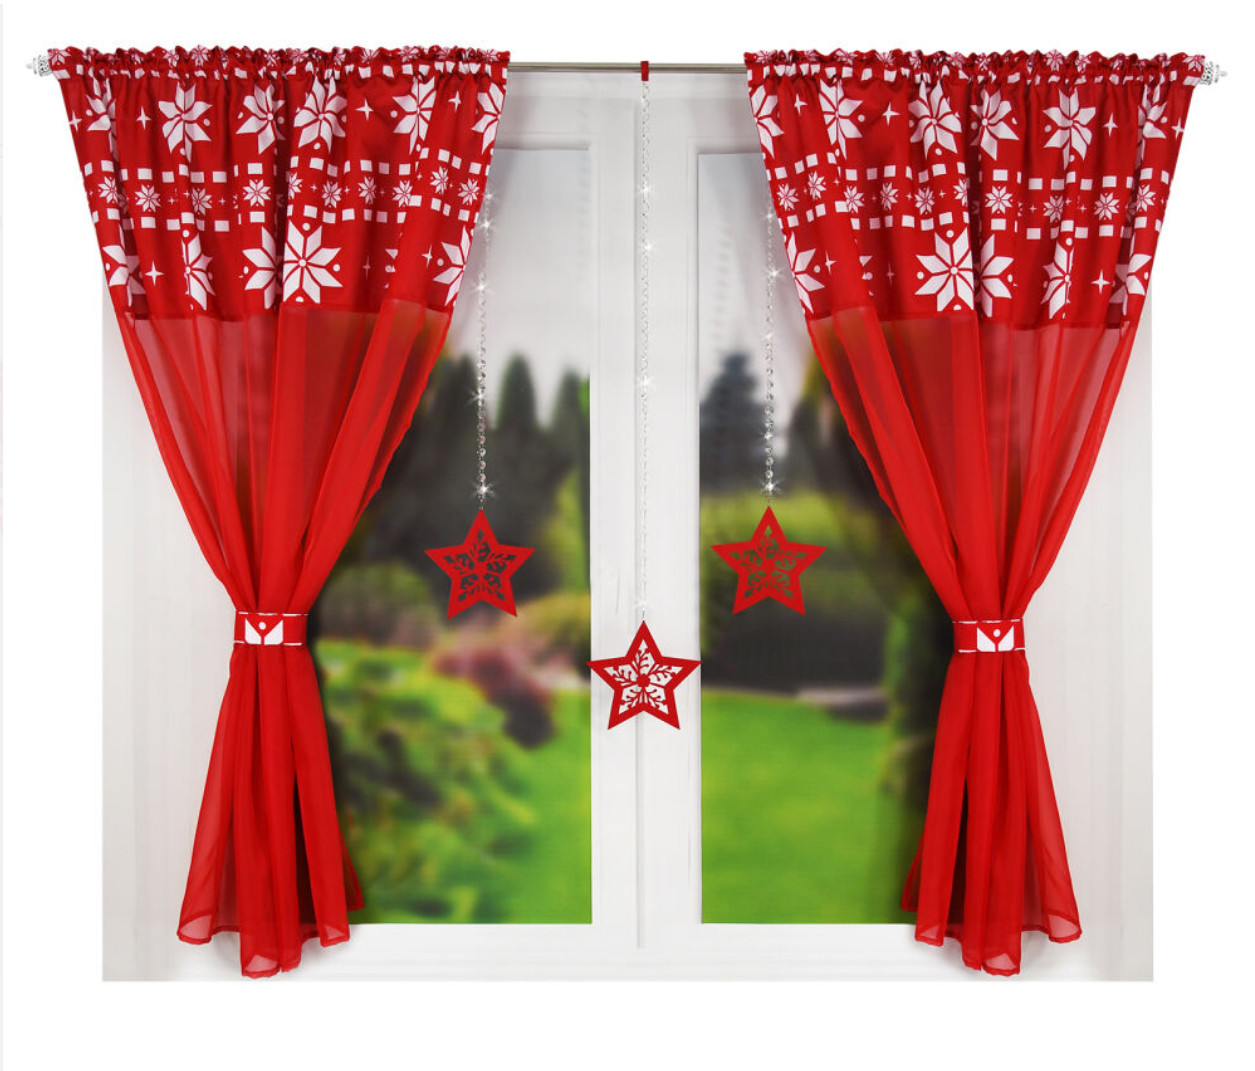 Vánoční SET 2 KUSY dekorační krátká záclona s tunýlkem a řasící páskou NATALY červená 2x145x160 cm MyBestHome Cena je za 2 kusy záclon